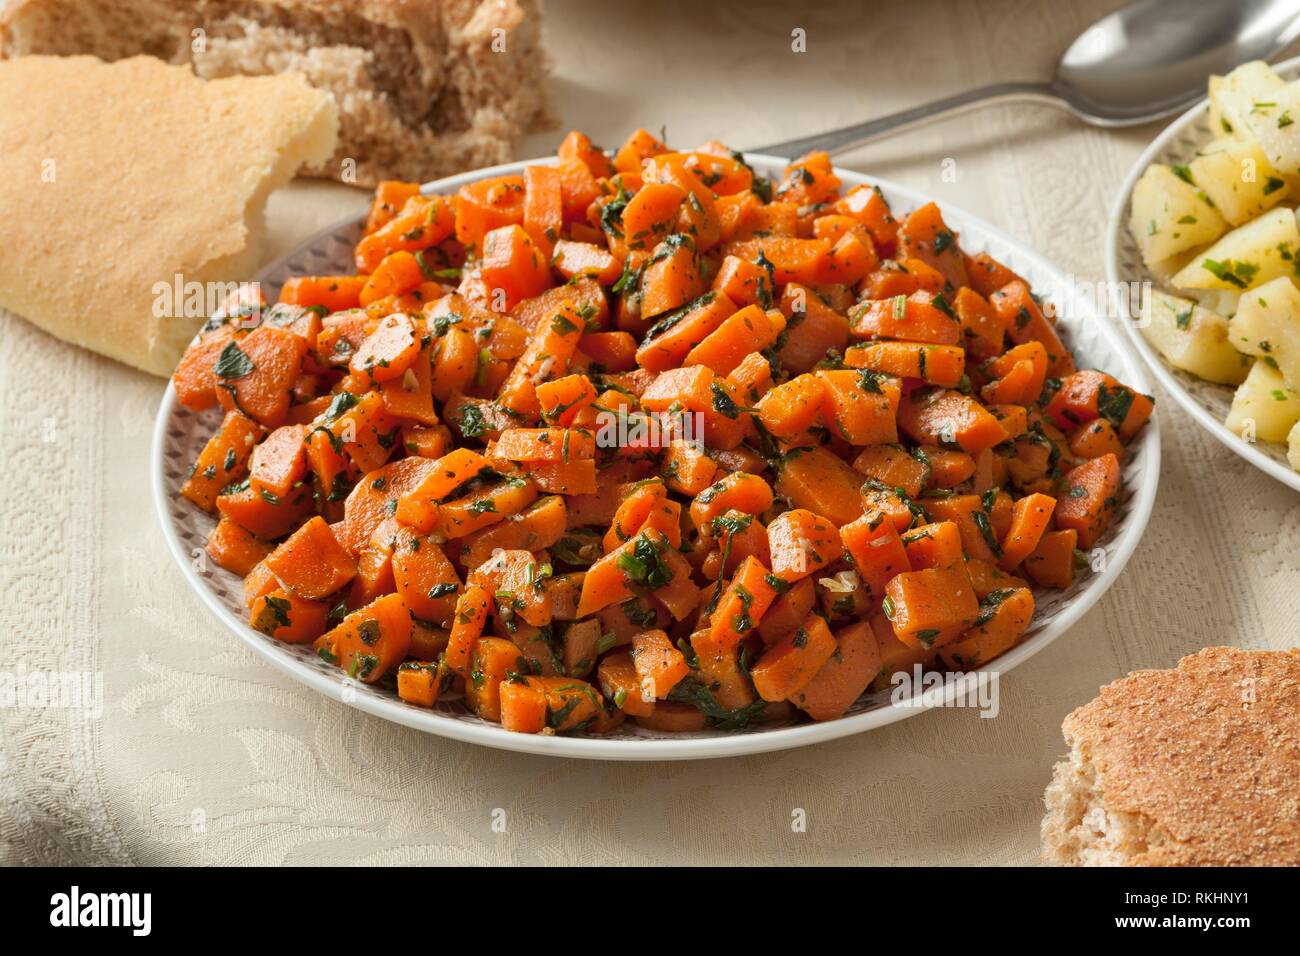 Cuisine Marocaine Salade de carottes en accompagnement. Banque D'Images